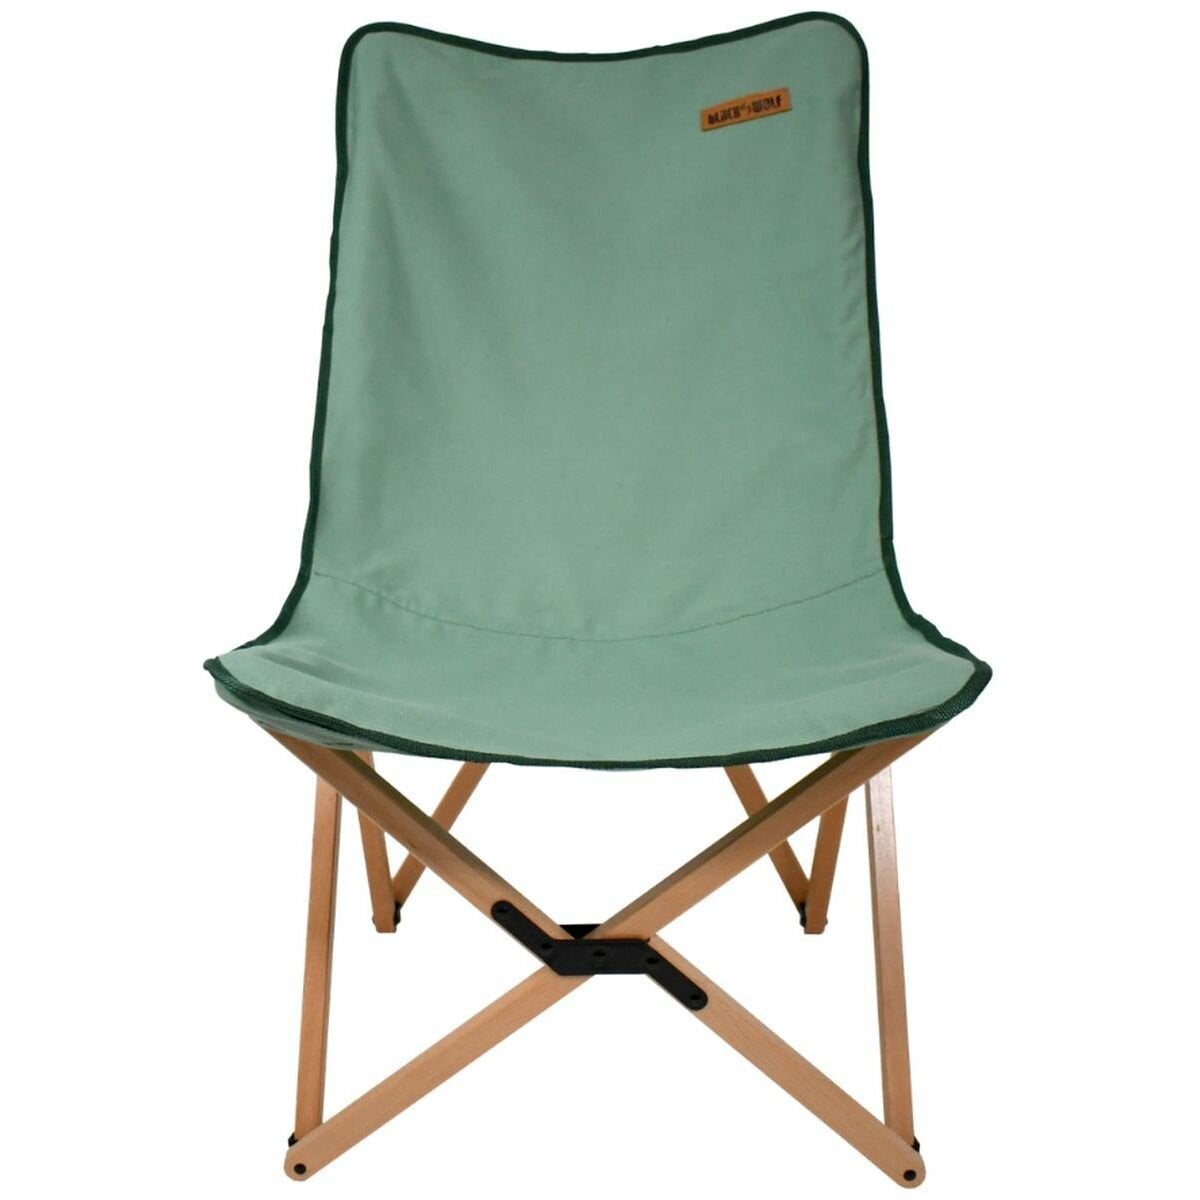 Image of BlackWolf XXL Beech Chair Shale Green 32S001711581000